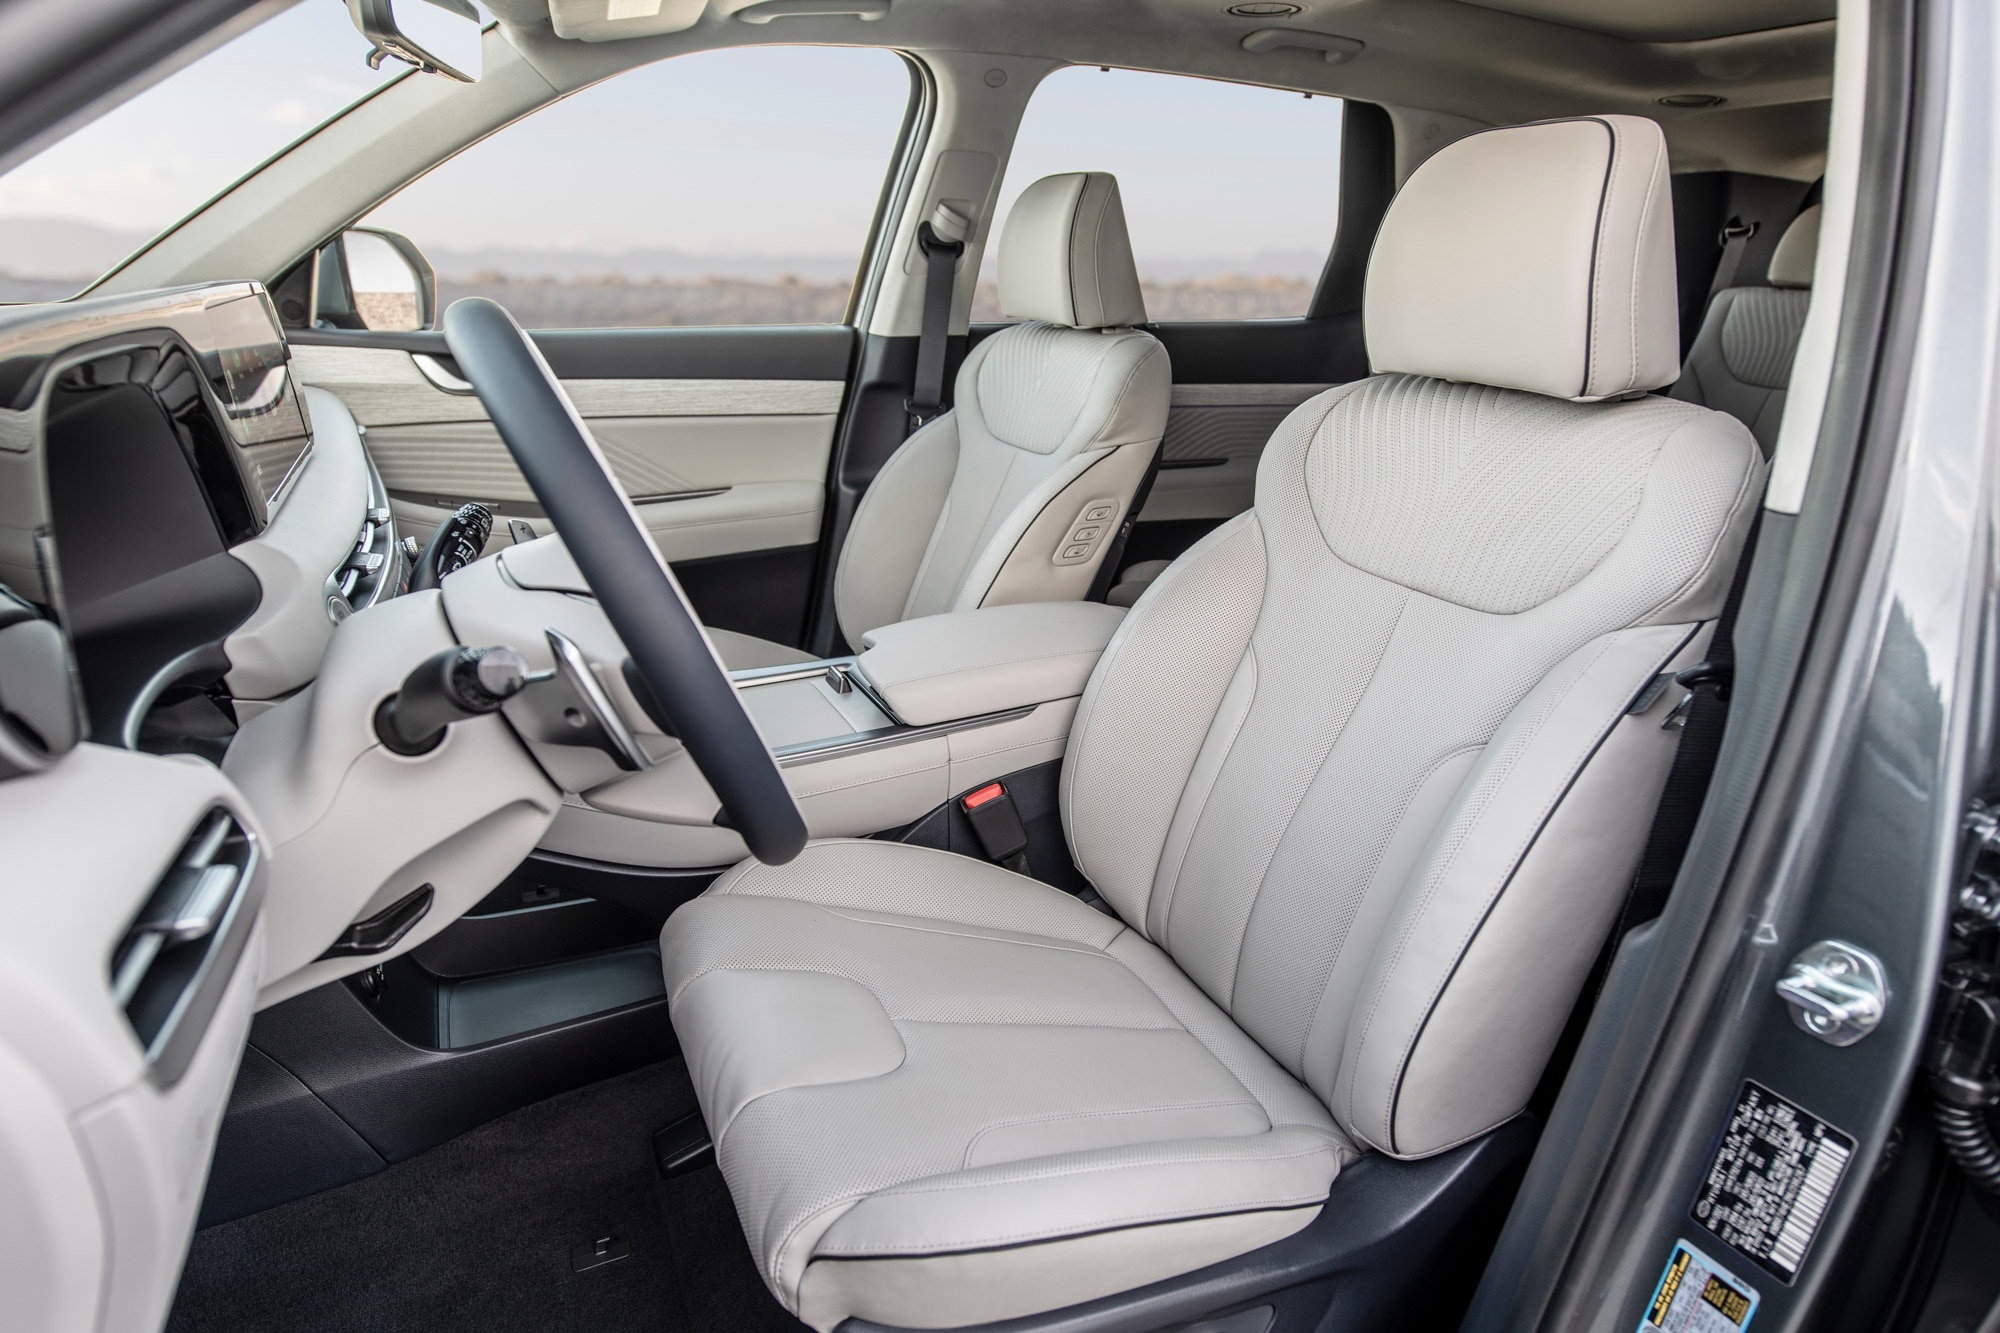 2024 Hyundai Palisade interior and front seats.